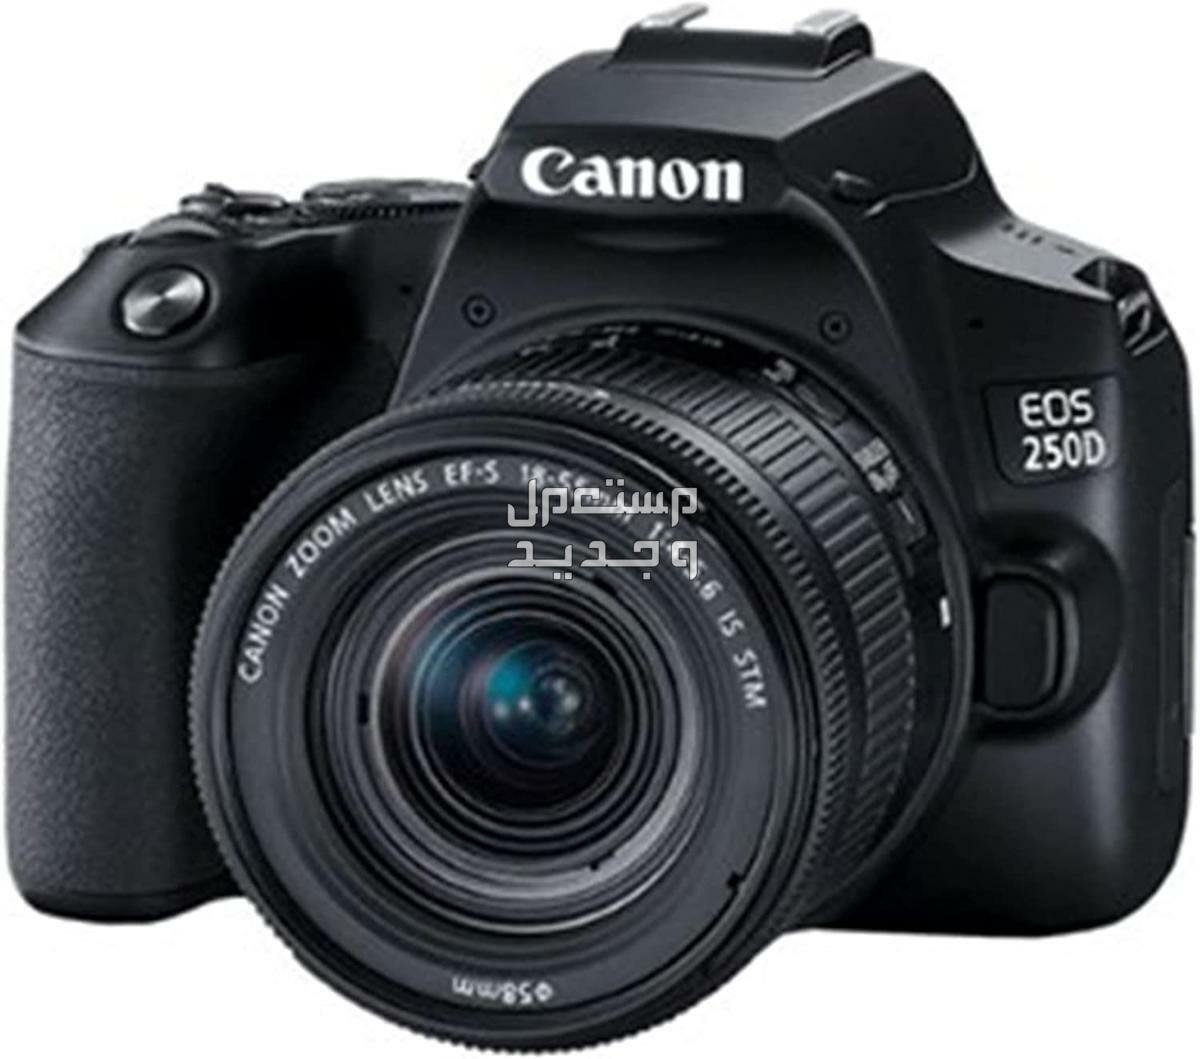 سعر ومميزات ومواصفات أرخص 5 كاميرات تصوير من كانون في البحرين كاميرا Canon EOS 250D